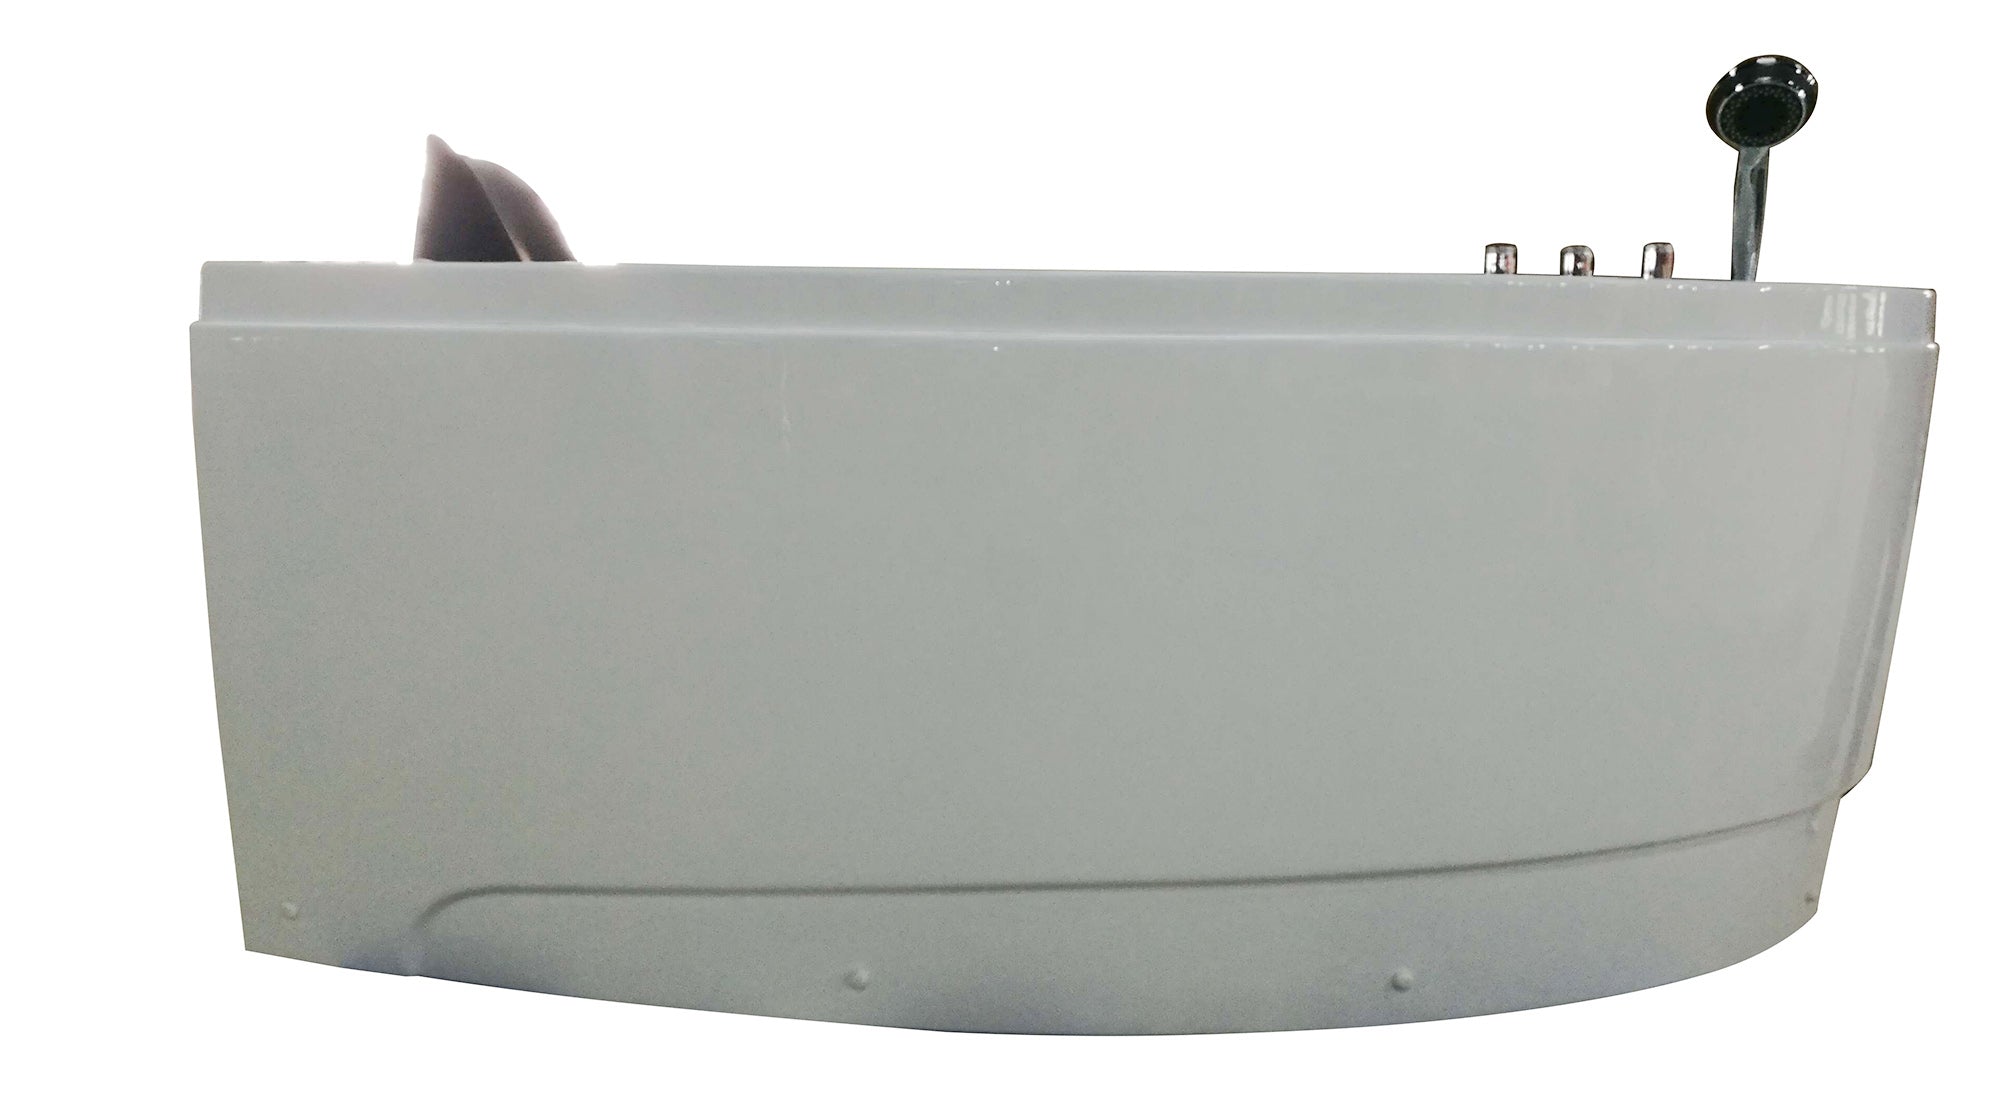 EAGO AM161 Corner Whirlpool Bath Tub White Acrylic